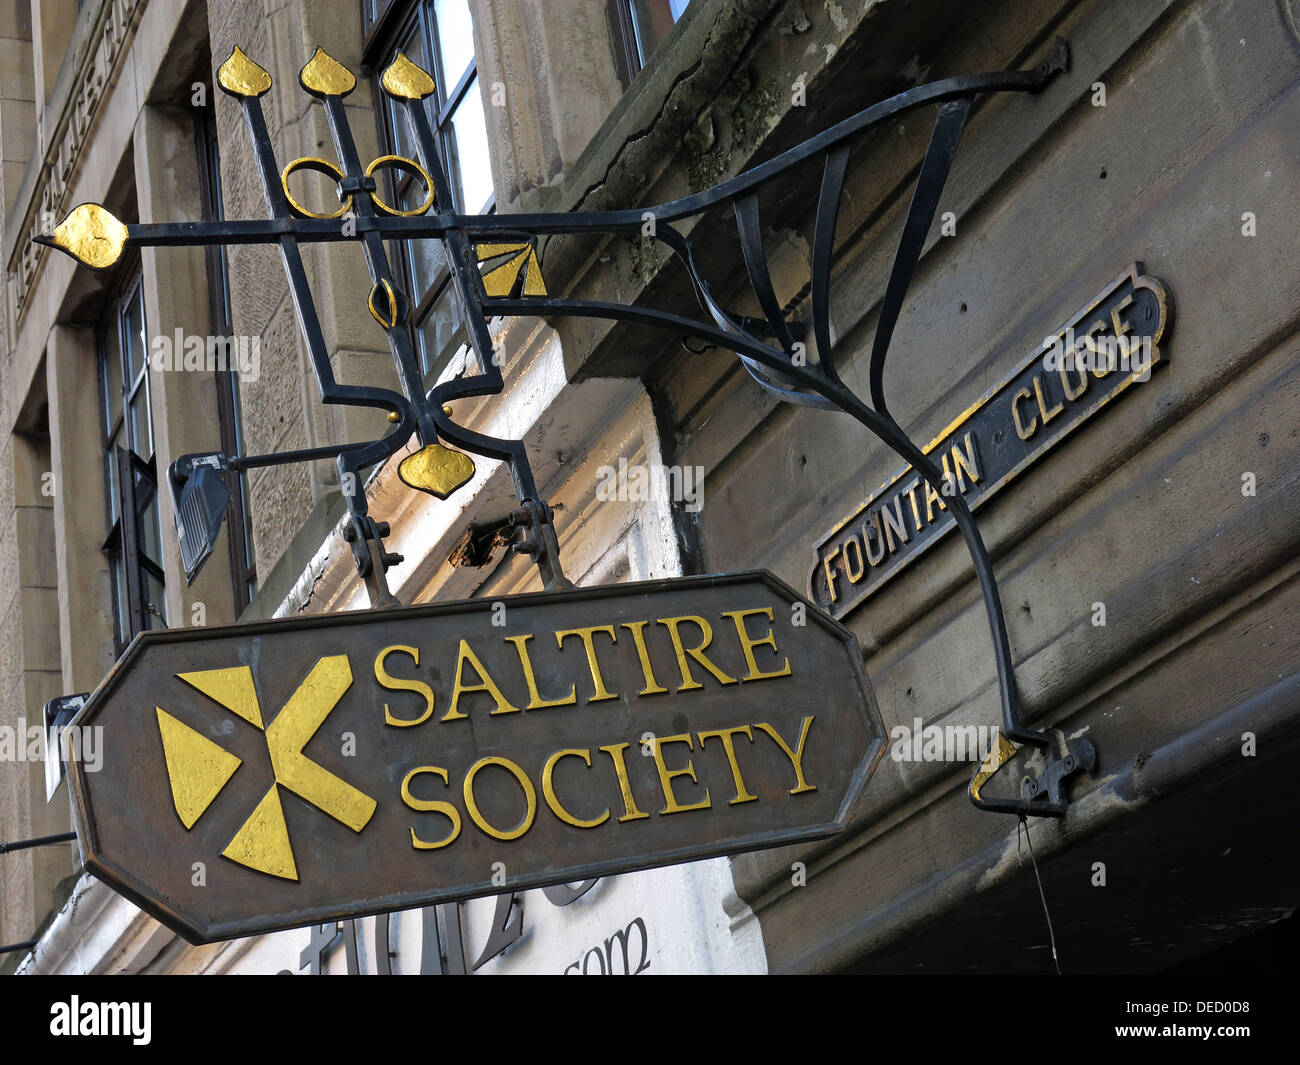 Saltire Society Zeichen & Büro Brunnen enge hohe St Royal Mile Edinburgh City Schottland, Vereinigtes Königreich Stockfoto